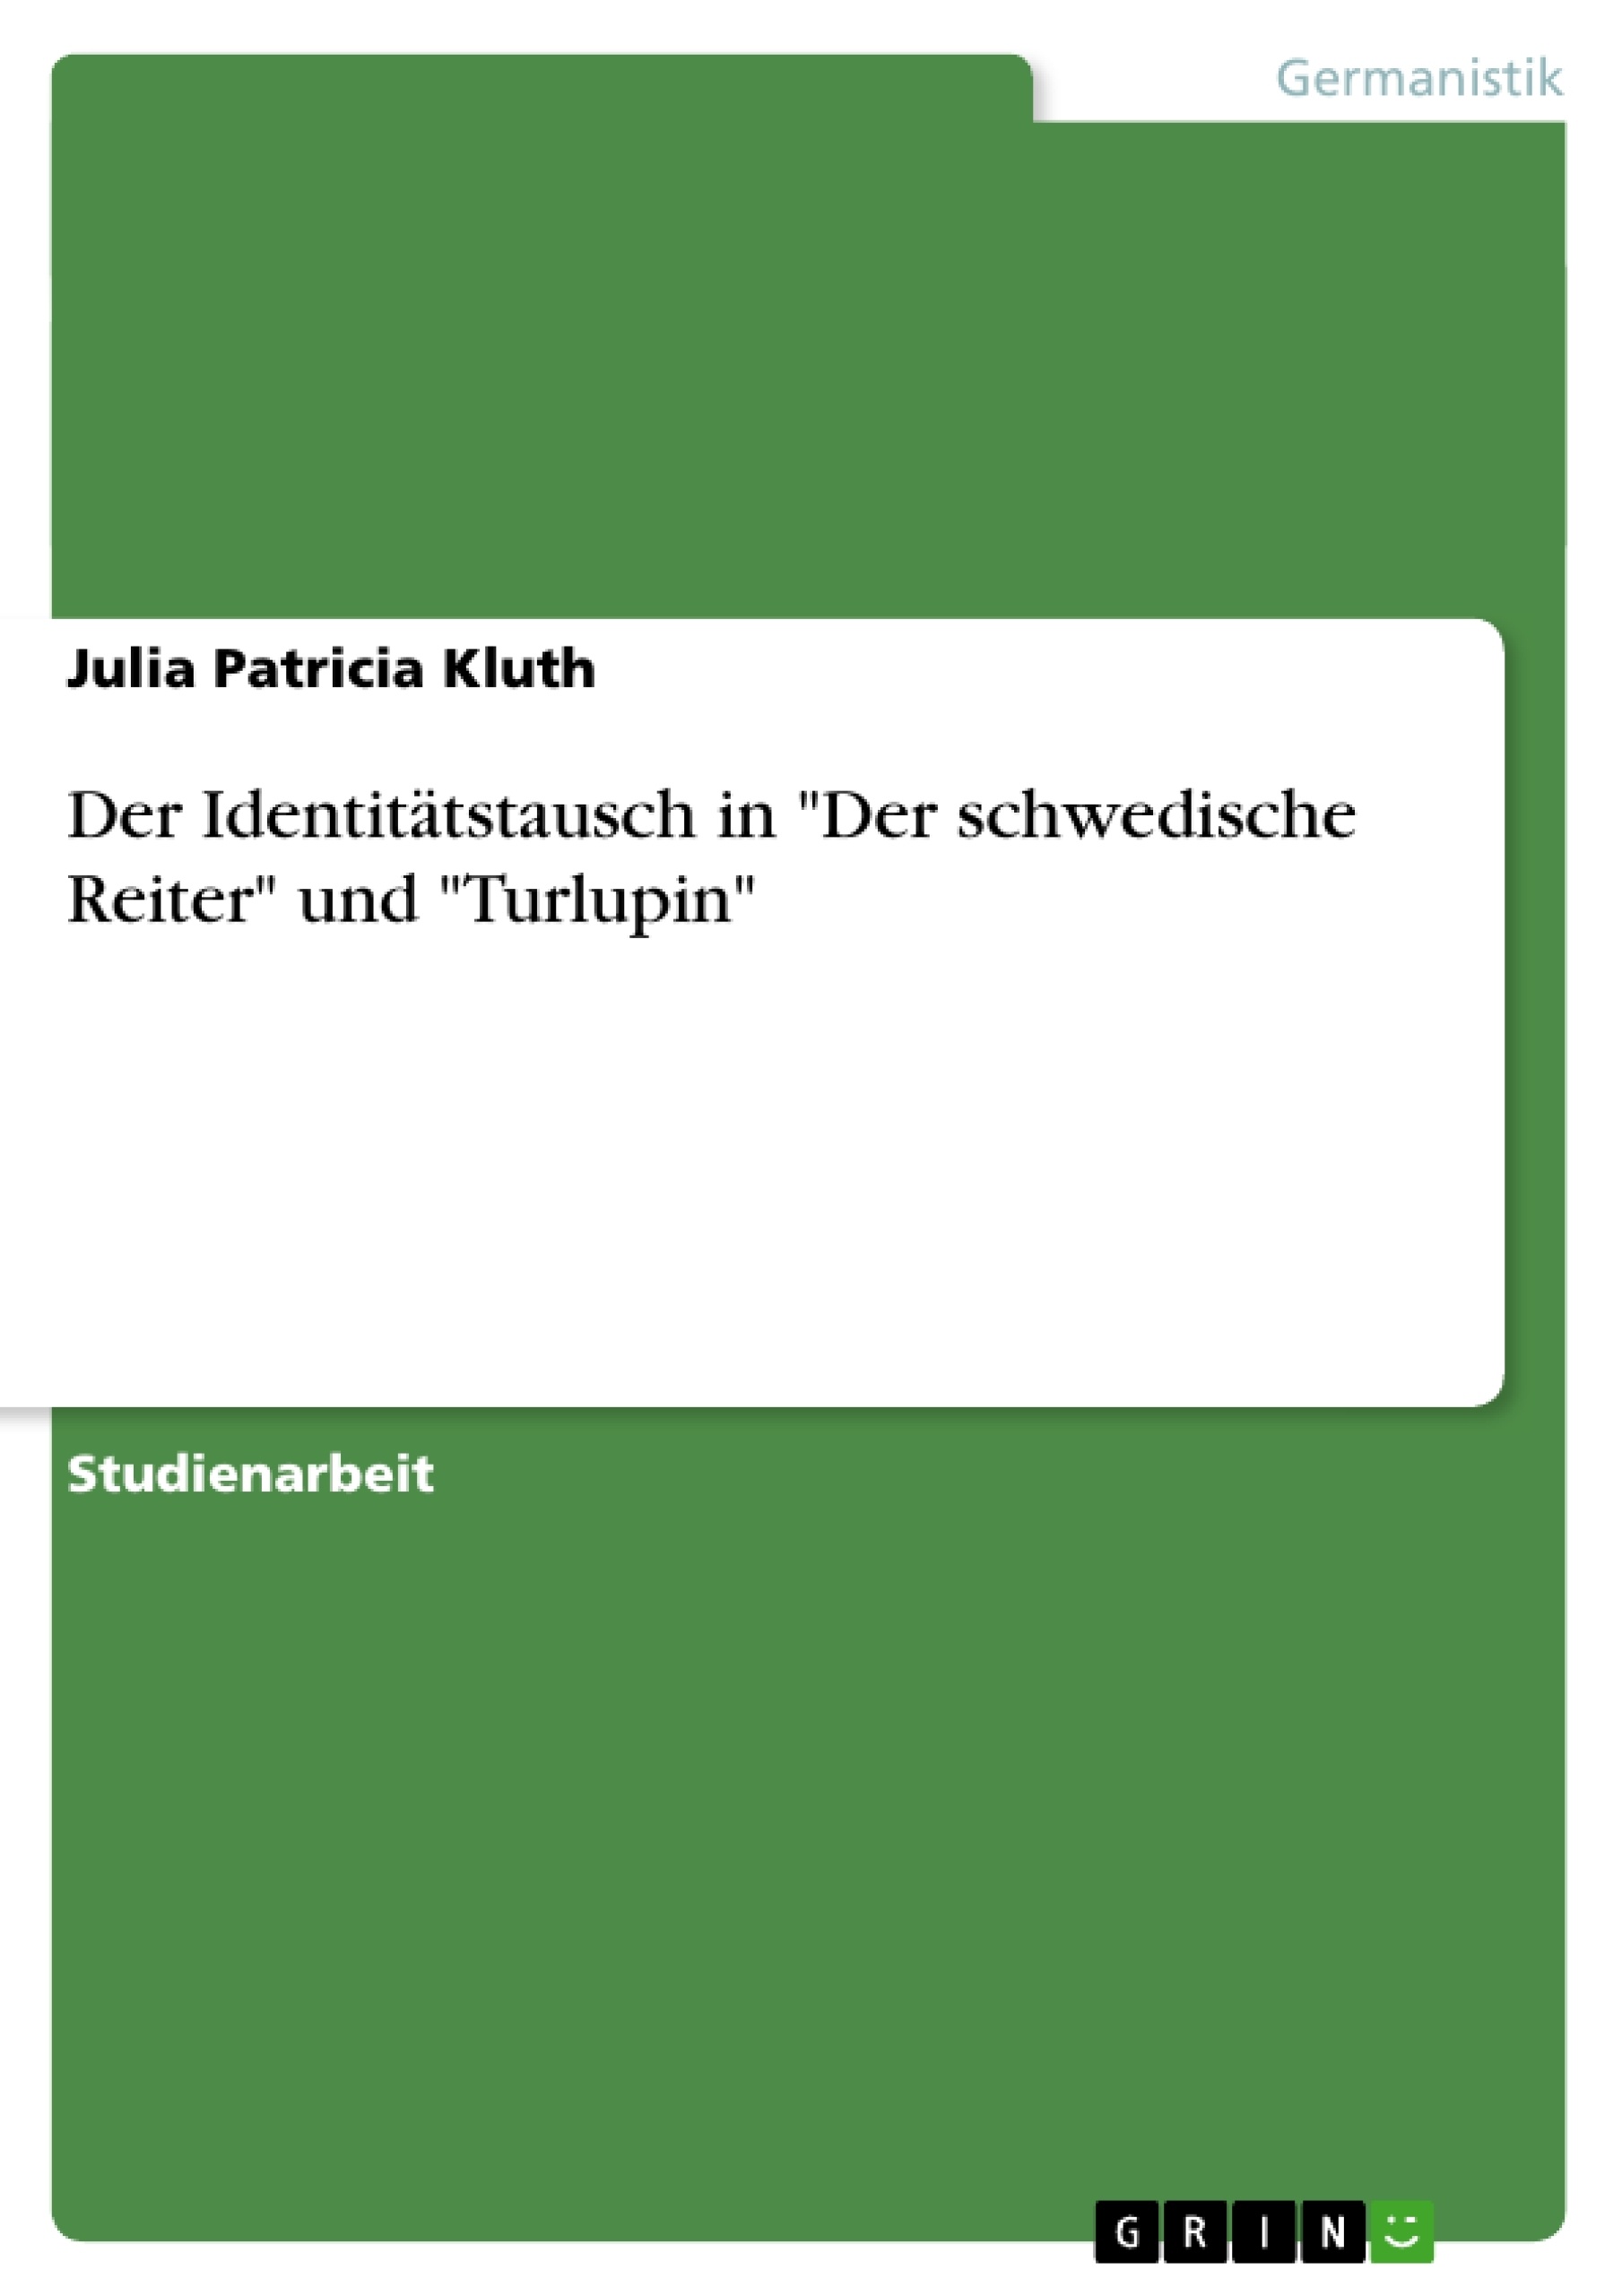 Título: Der Identitätstausch in "Der schwedische Reiter" und "Turlupin"